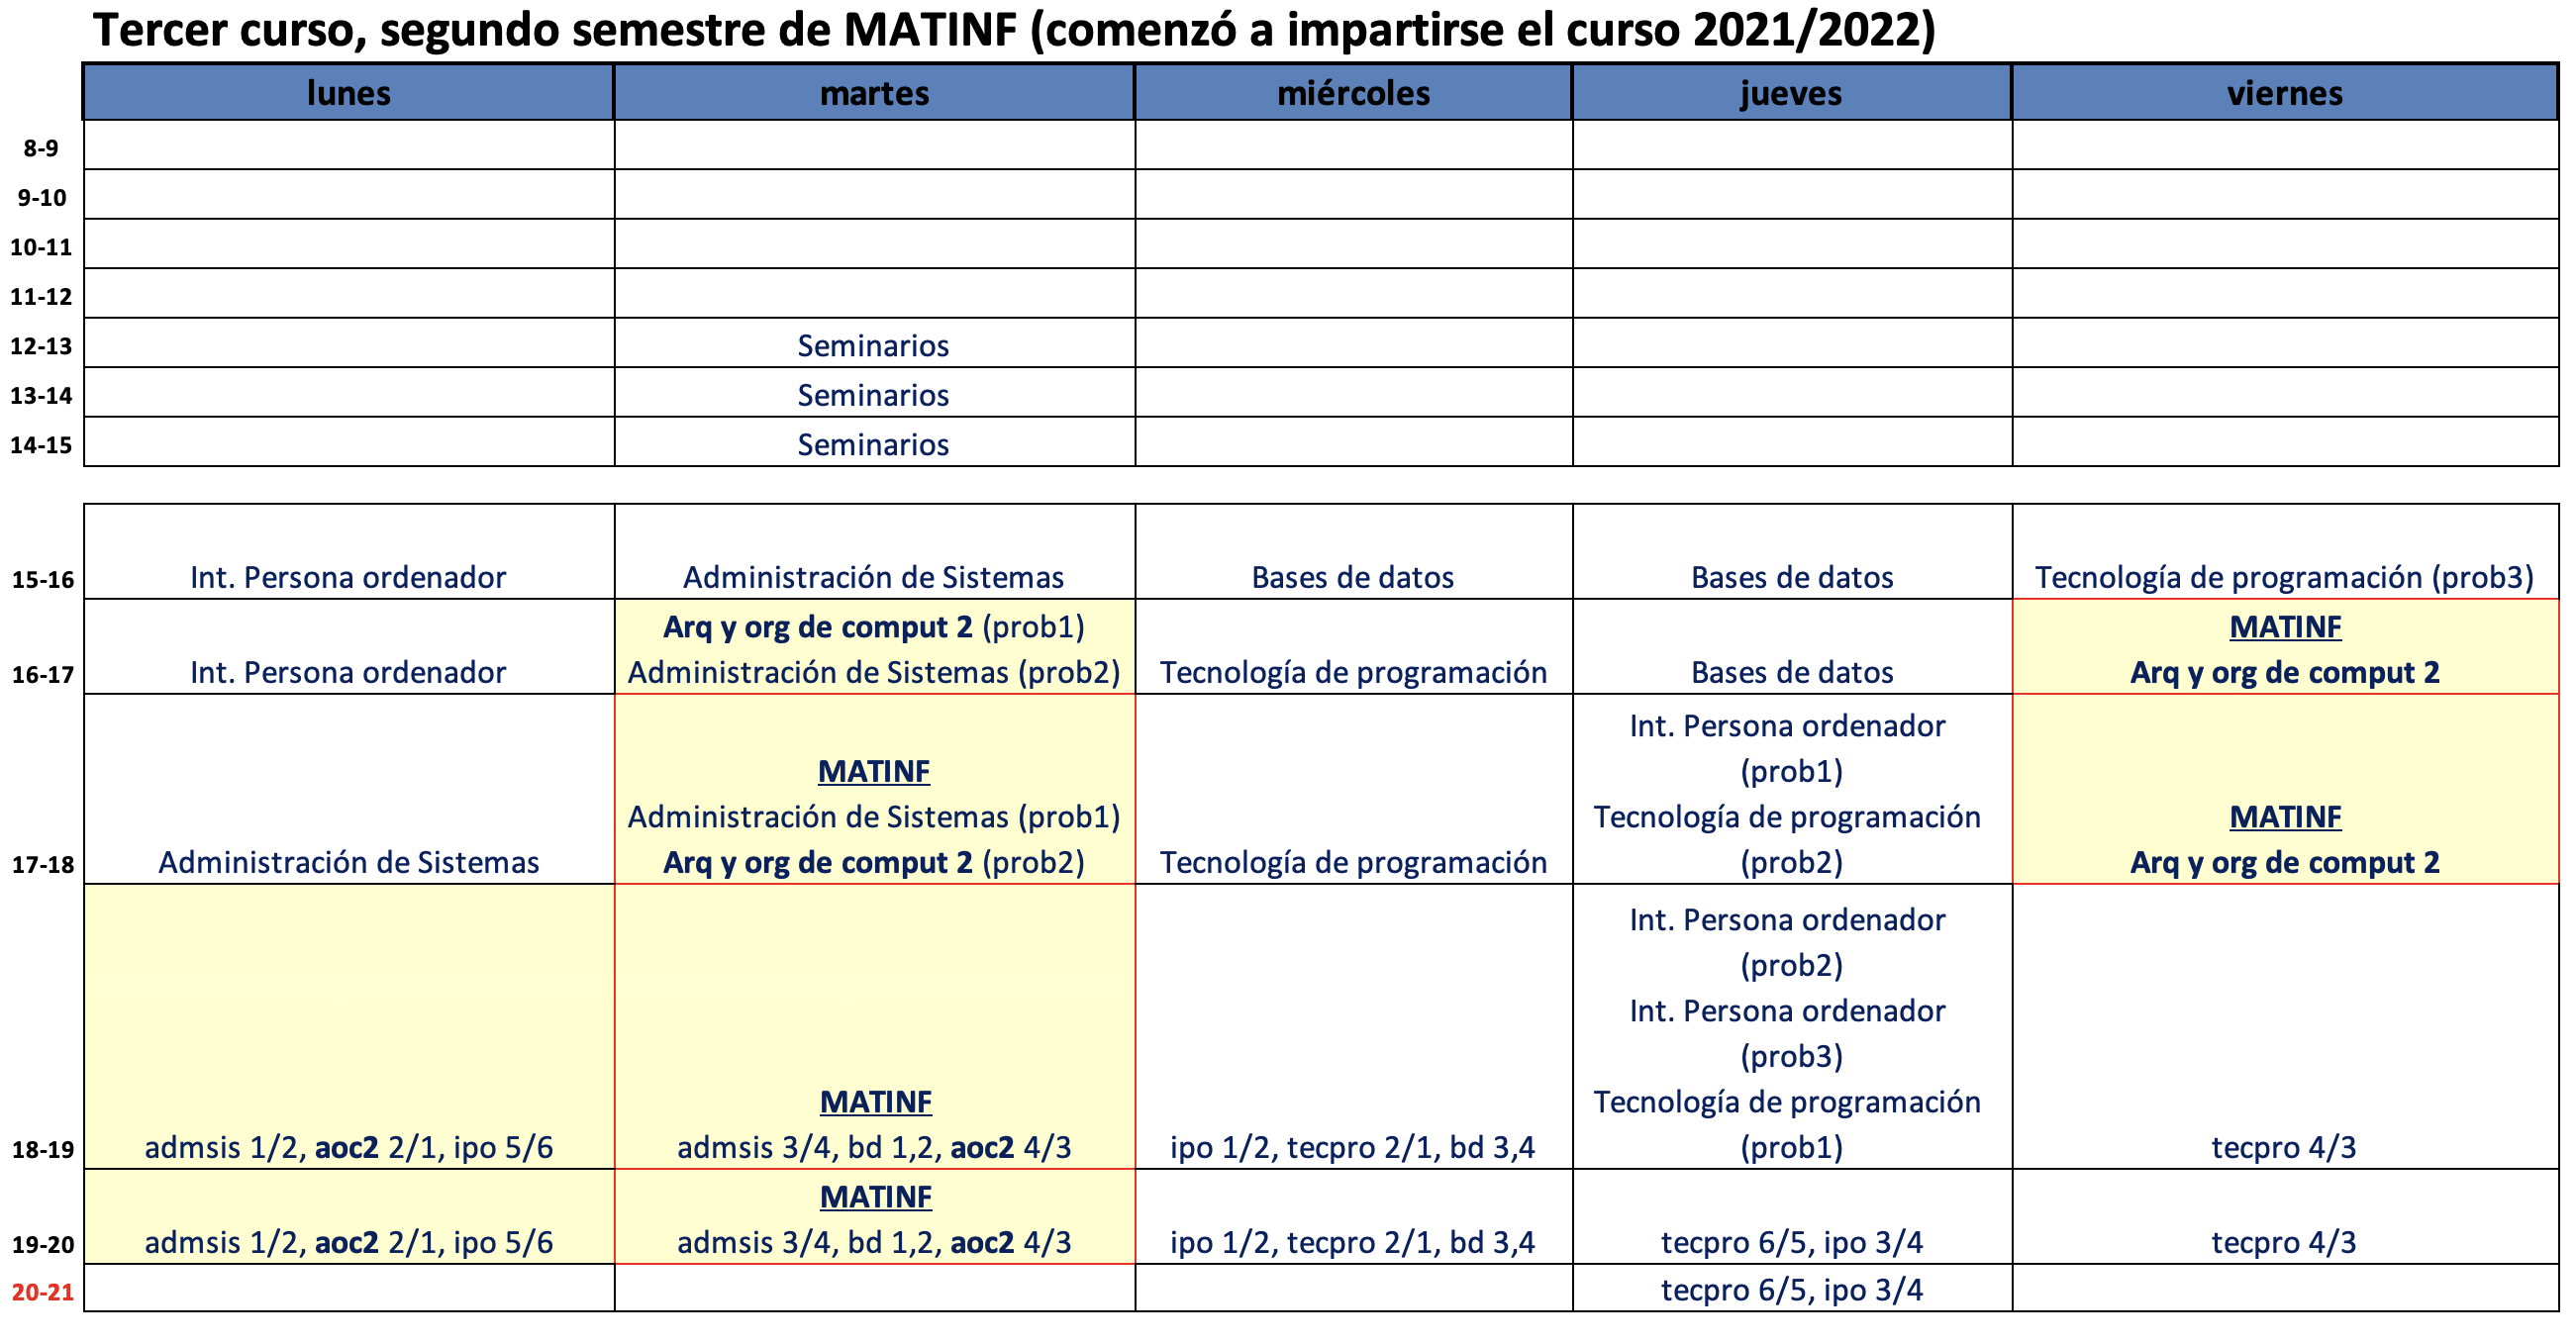 Tercer curso, segundo semestre de MATINF (comienza a impartirse el curso 2021/2022)